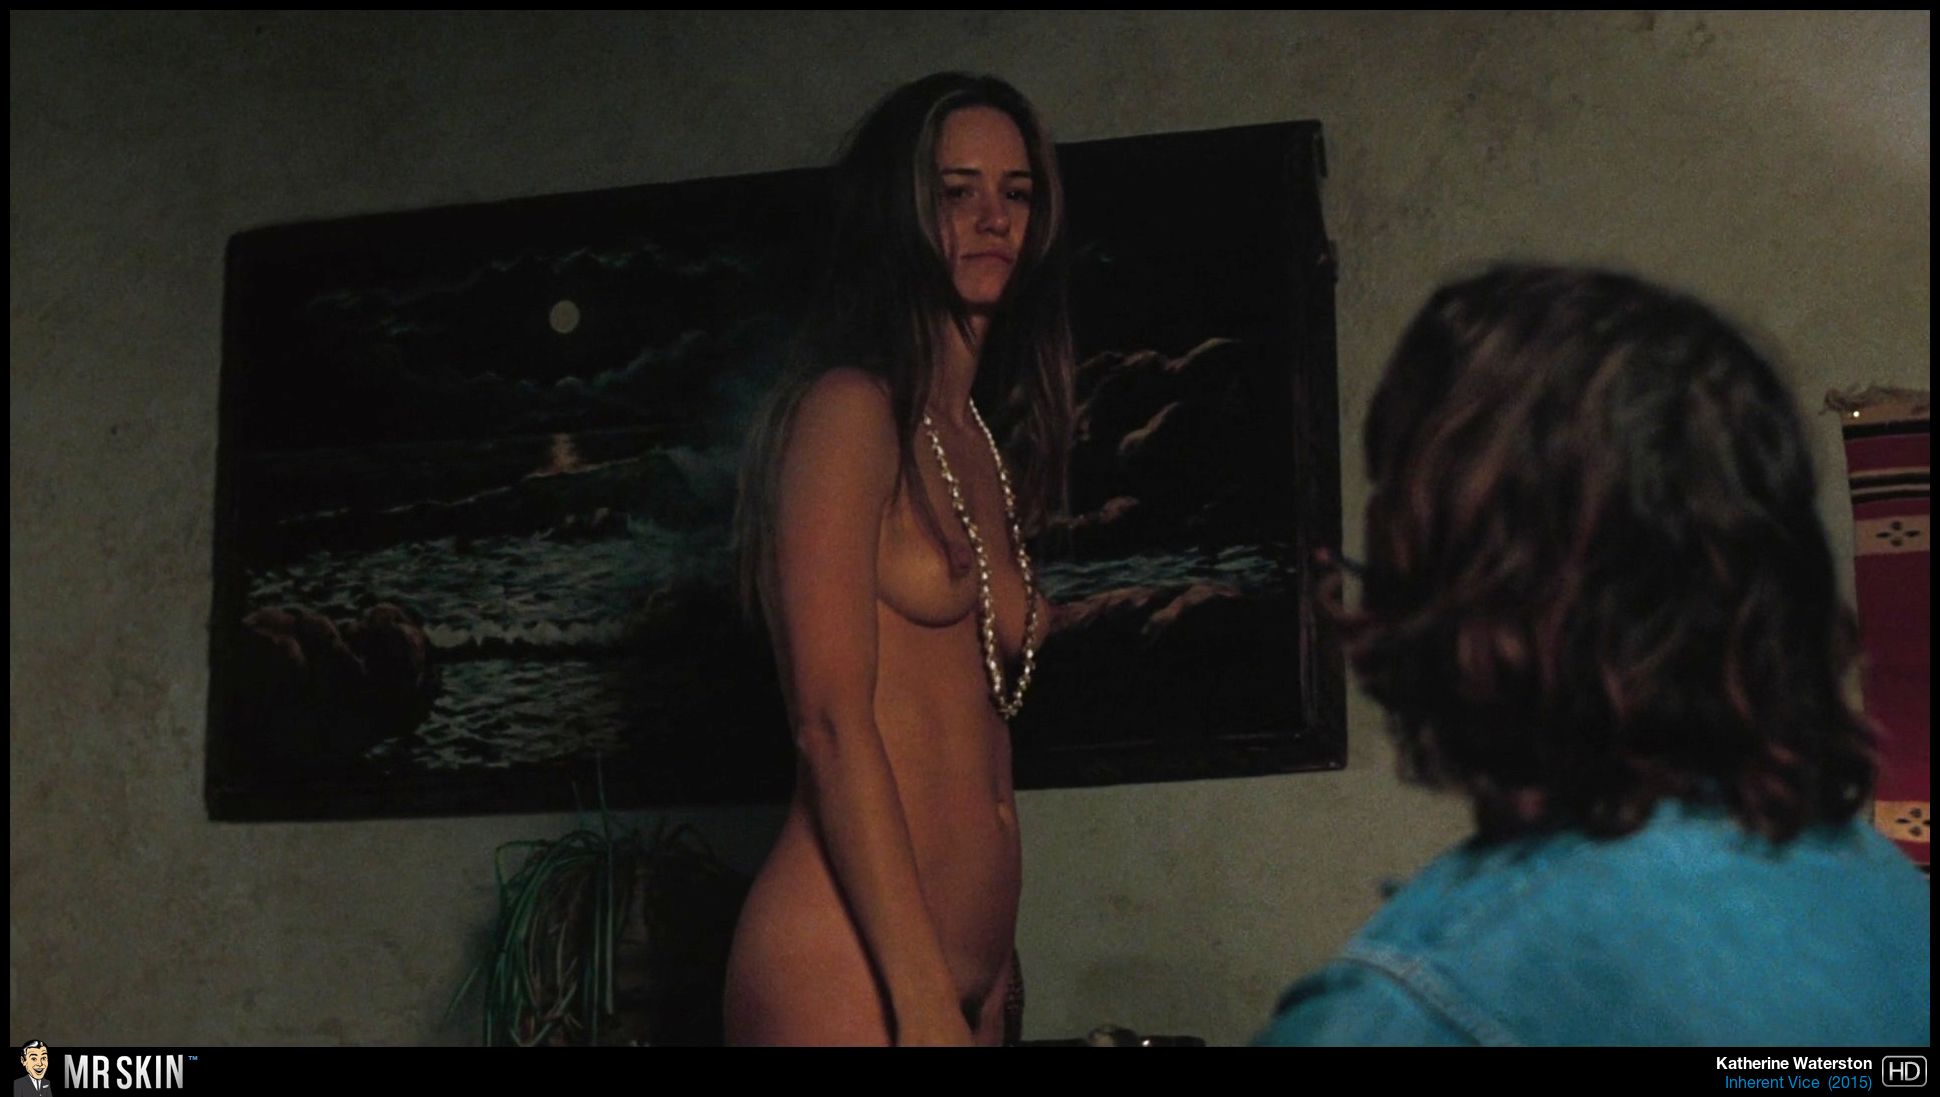 Full Frontal Nudity In Film